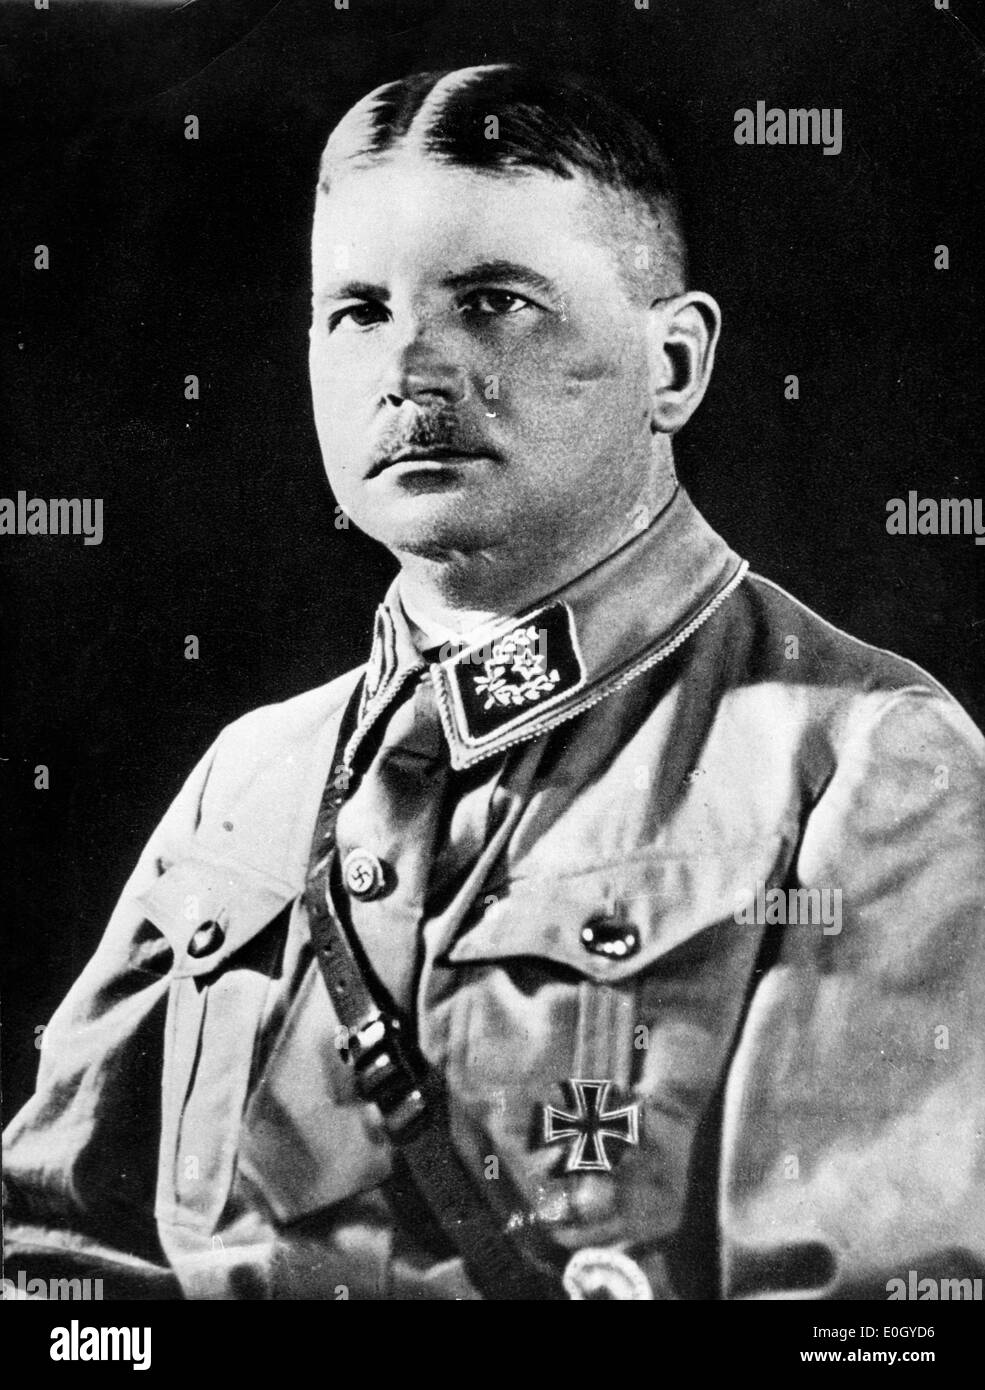 Gen 01, 1940 - Germania - File foto: circa 1940s, esatta posizione sconosciuta. Ritratto del leader nazista ERNST ROEHM. Foto Stock